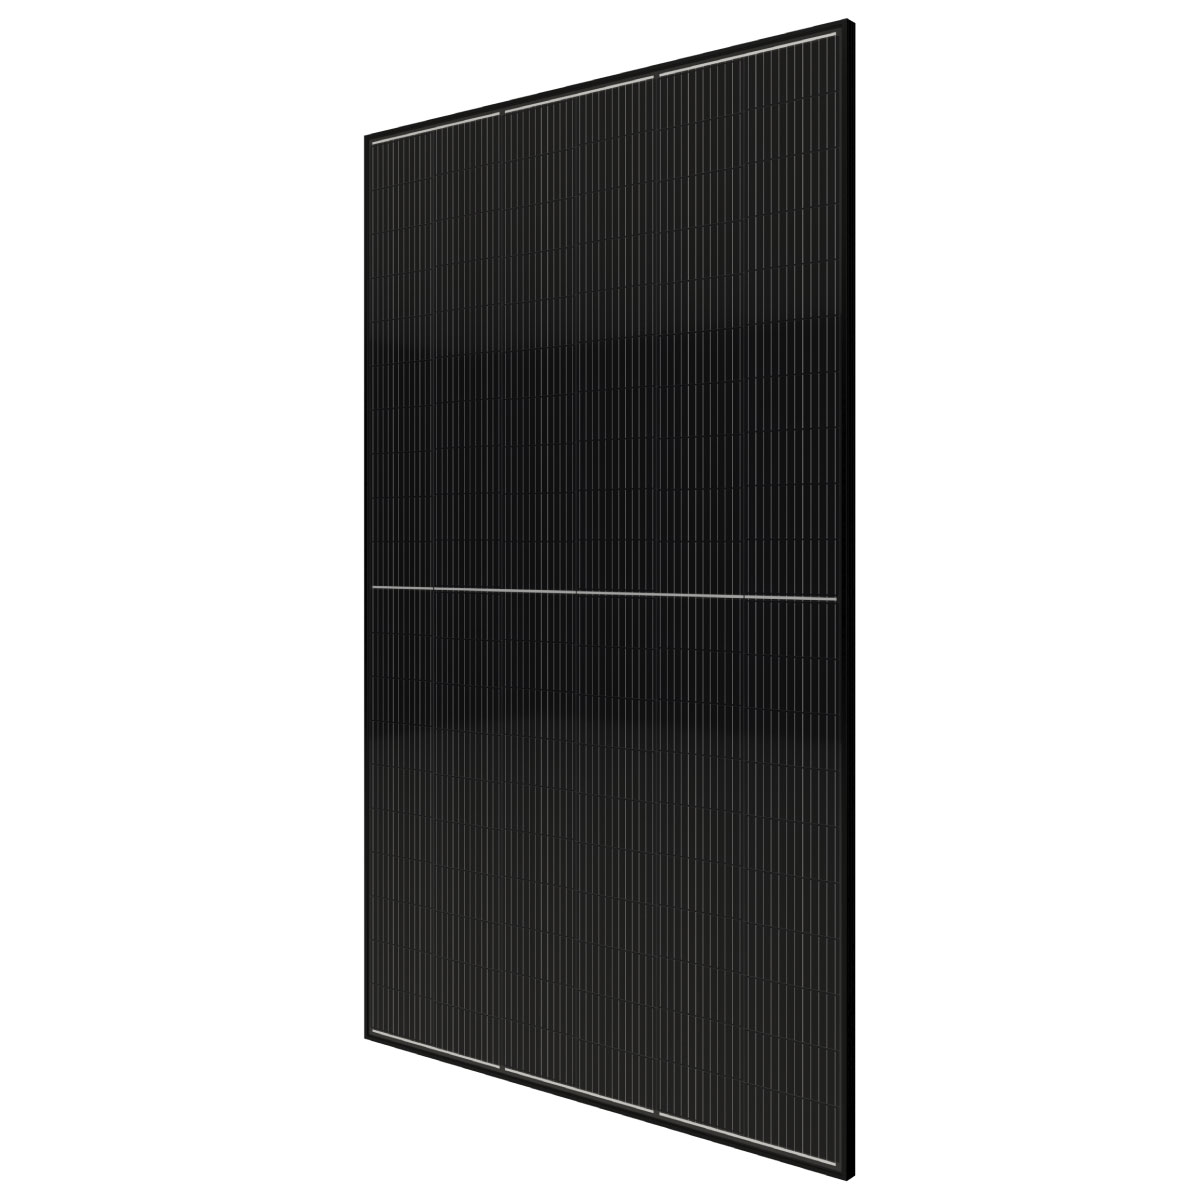 TommaTech 605Wp 120PM M12 Full Black Güneş Paneli